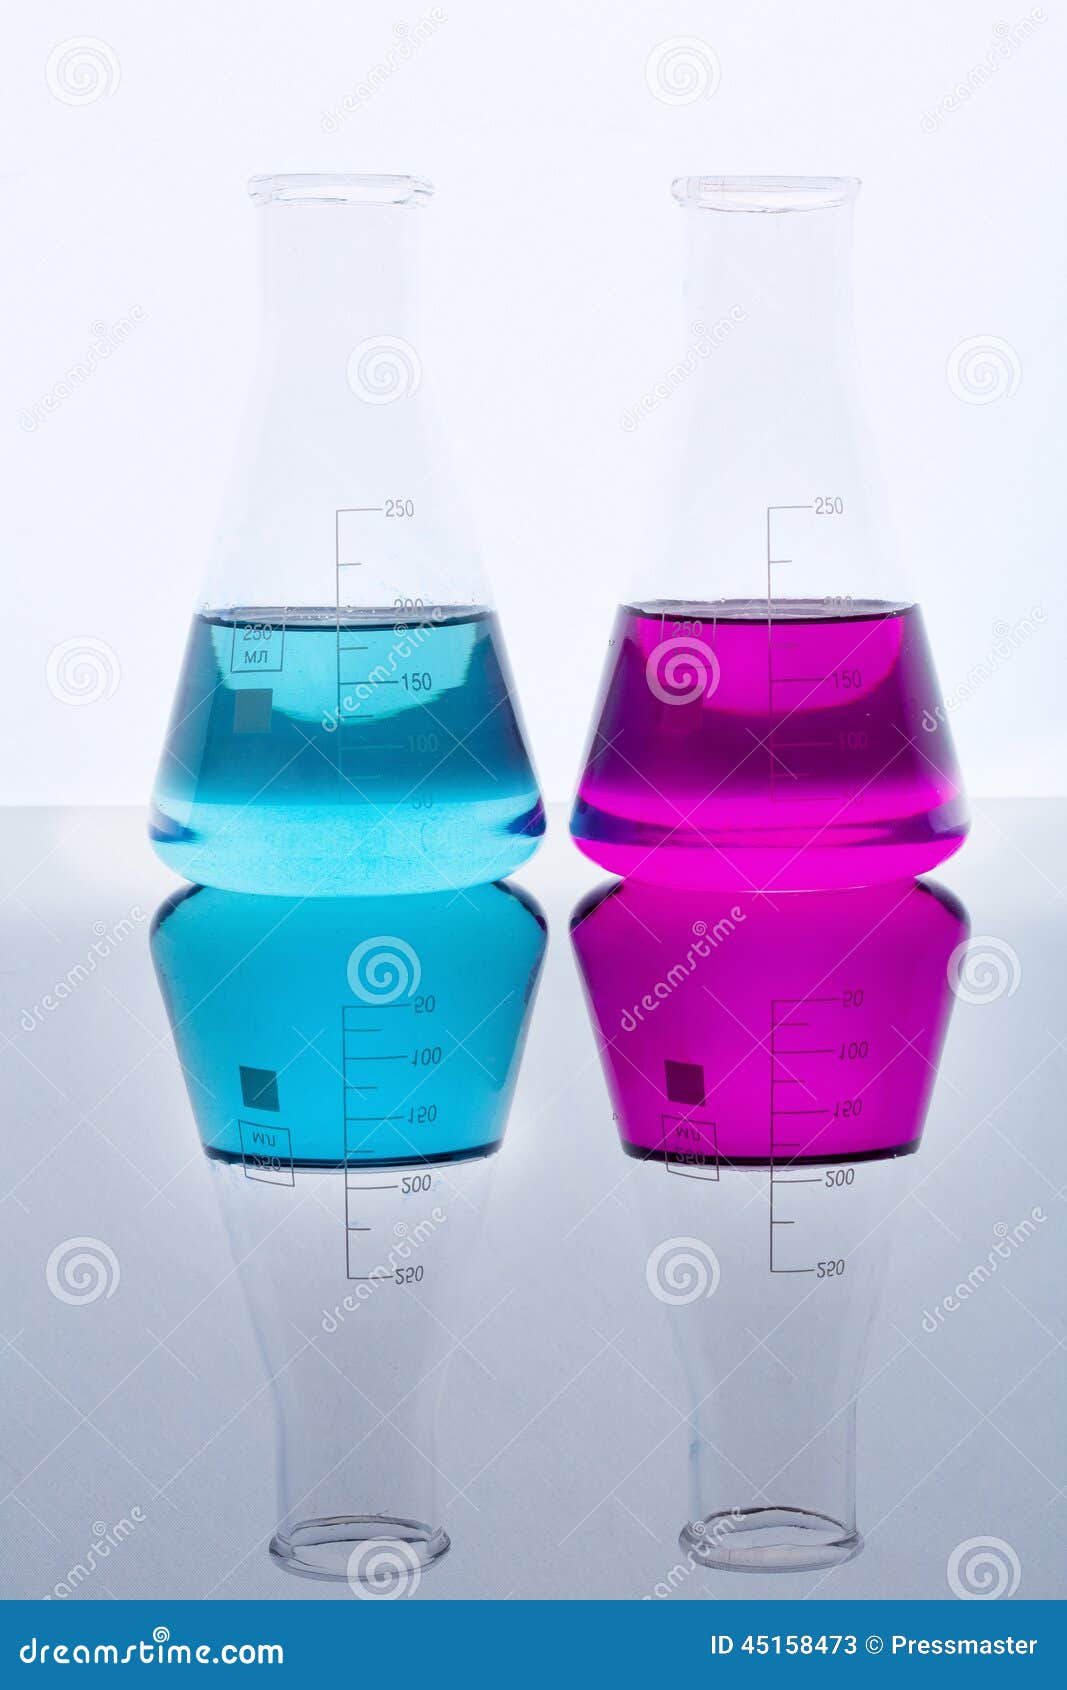 На столе стоят три склянки с водой. Колба с фиолетовой жидкостью. Колба с бирюзовой жидкостью. 2 Колбы с синей жидкостью. Мерная колба с красно фиолетовой жидкостью.